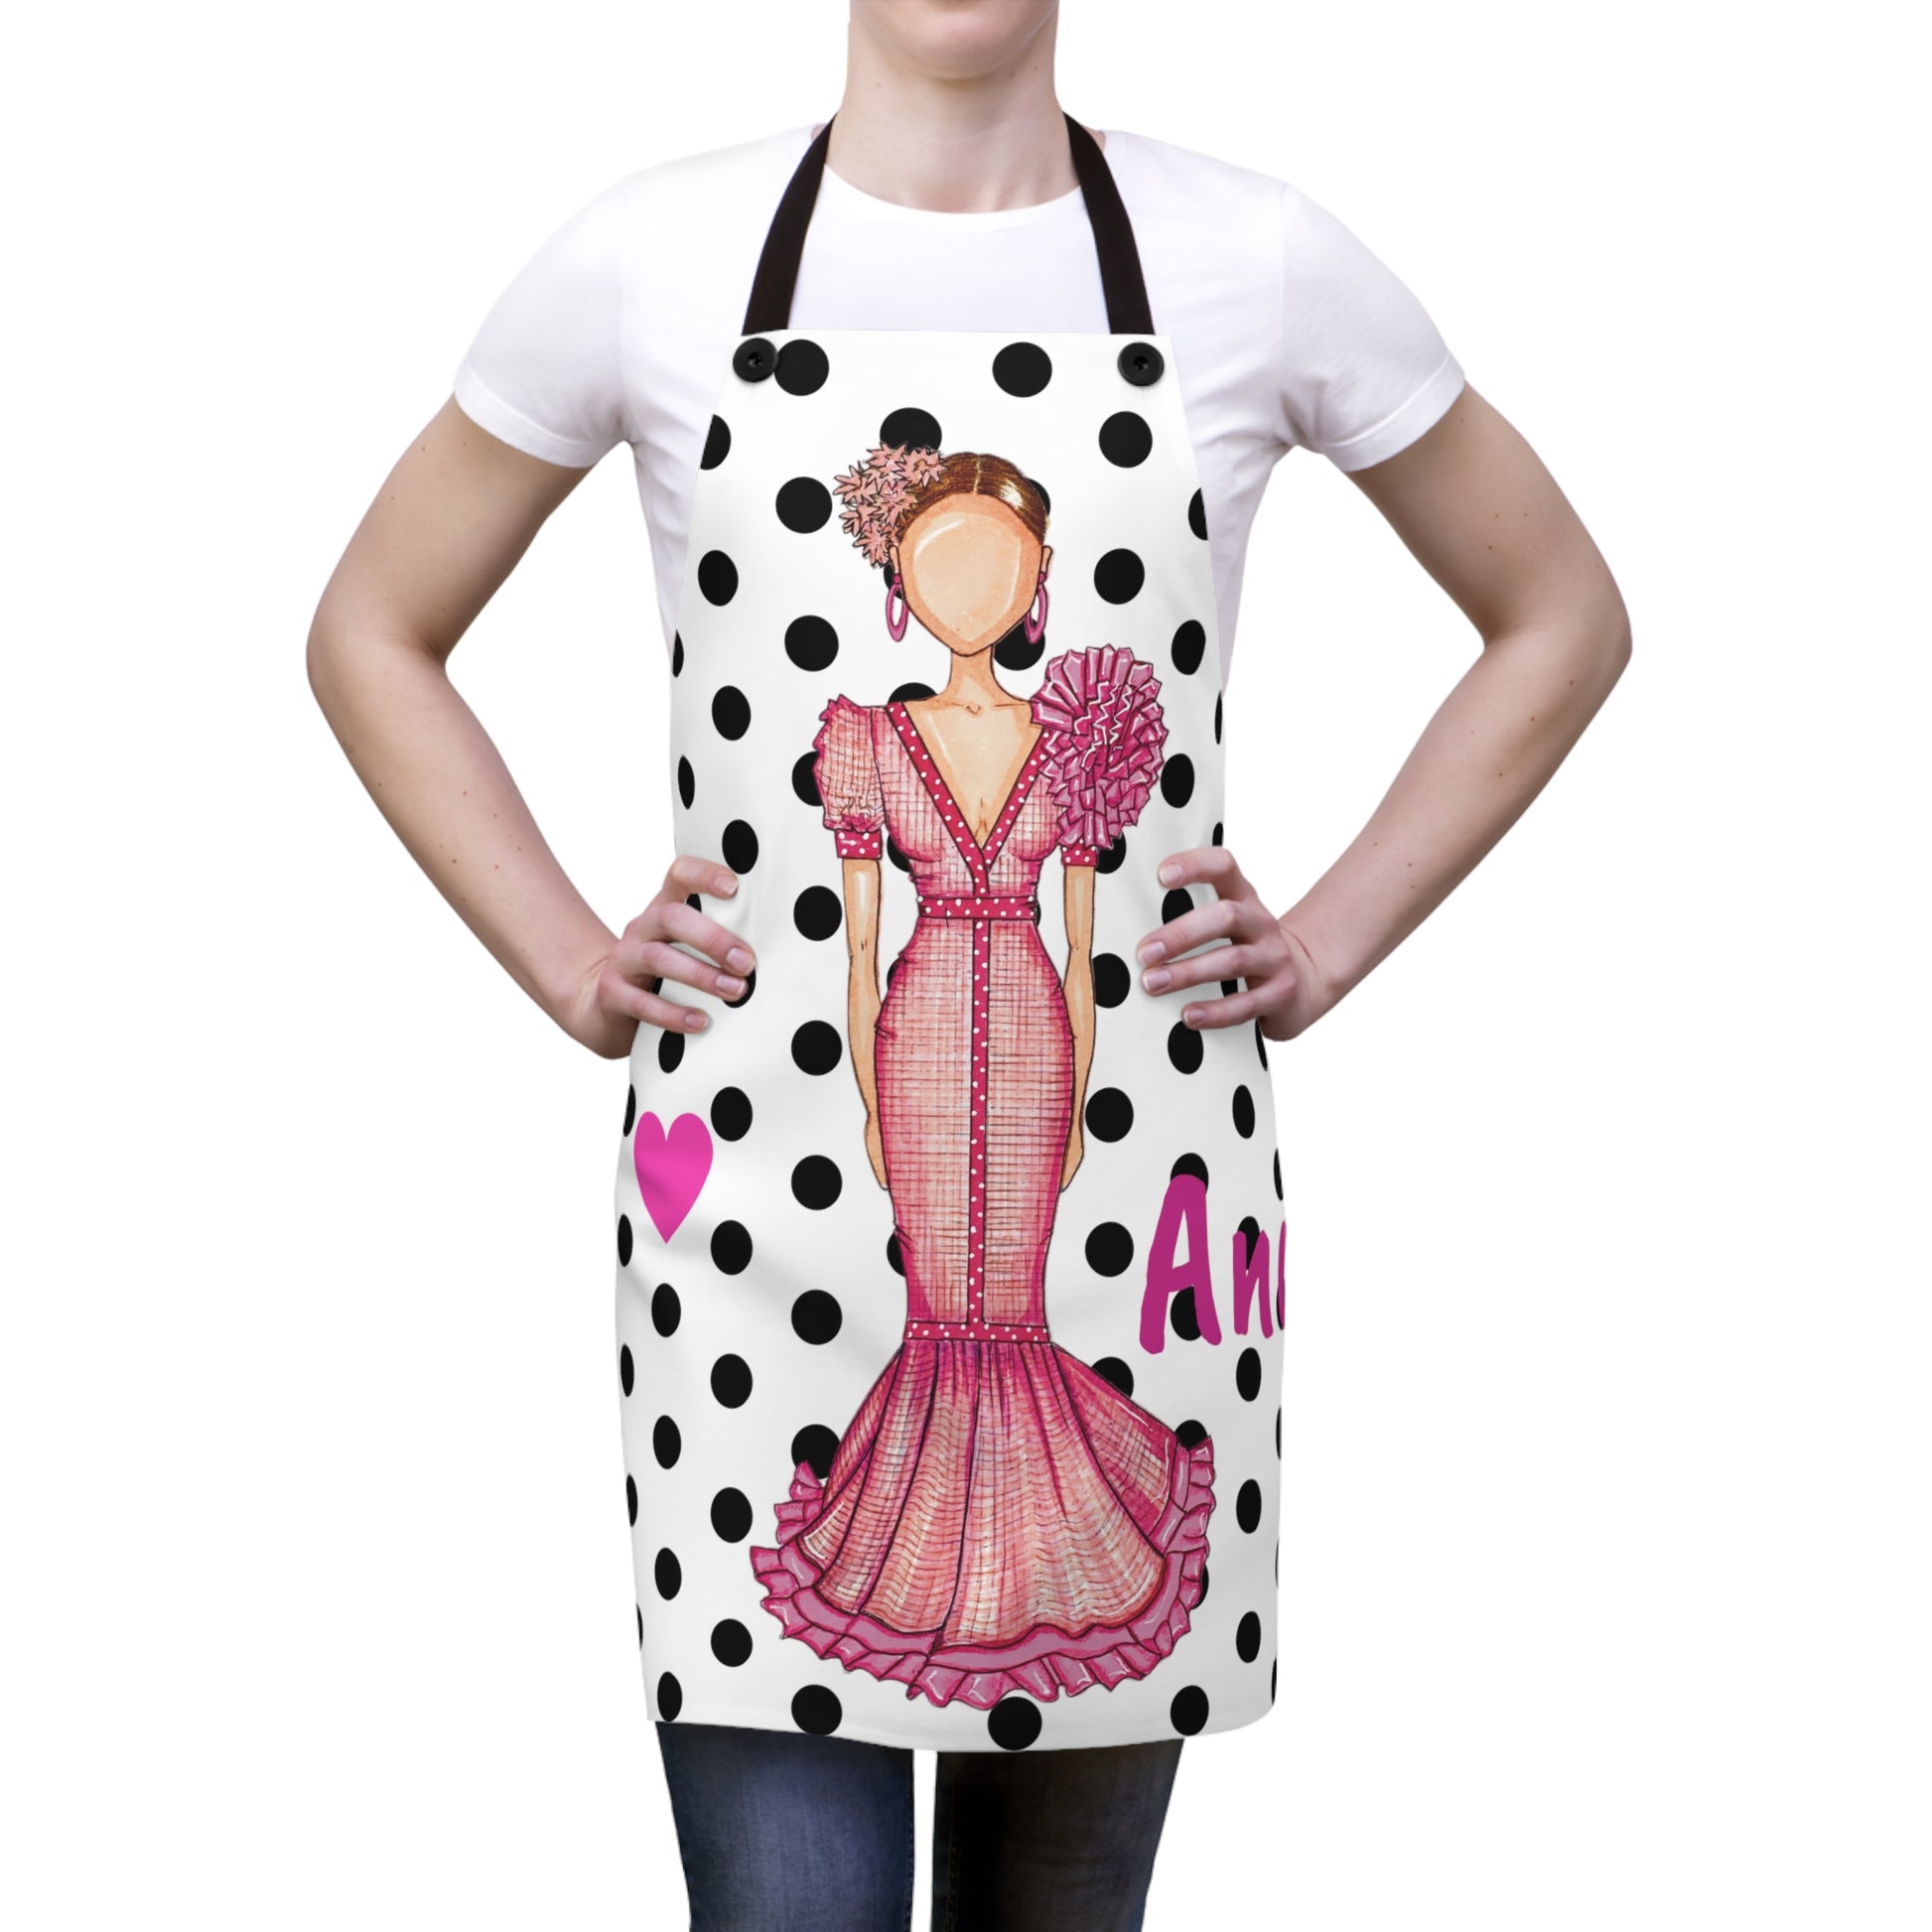 a woman wearing a polka dot apron